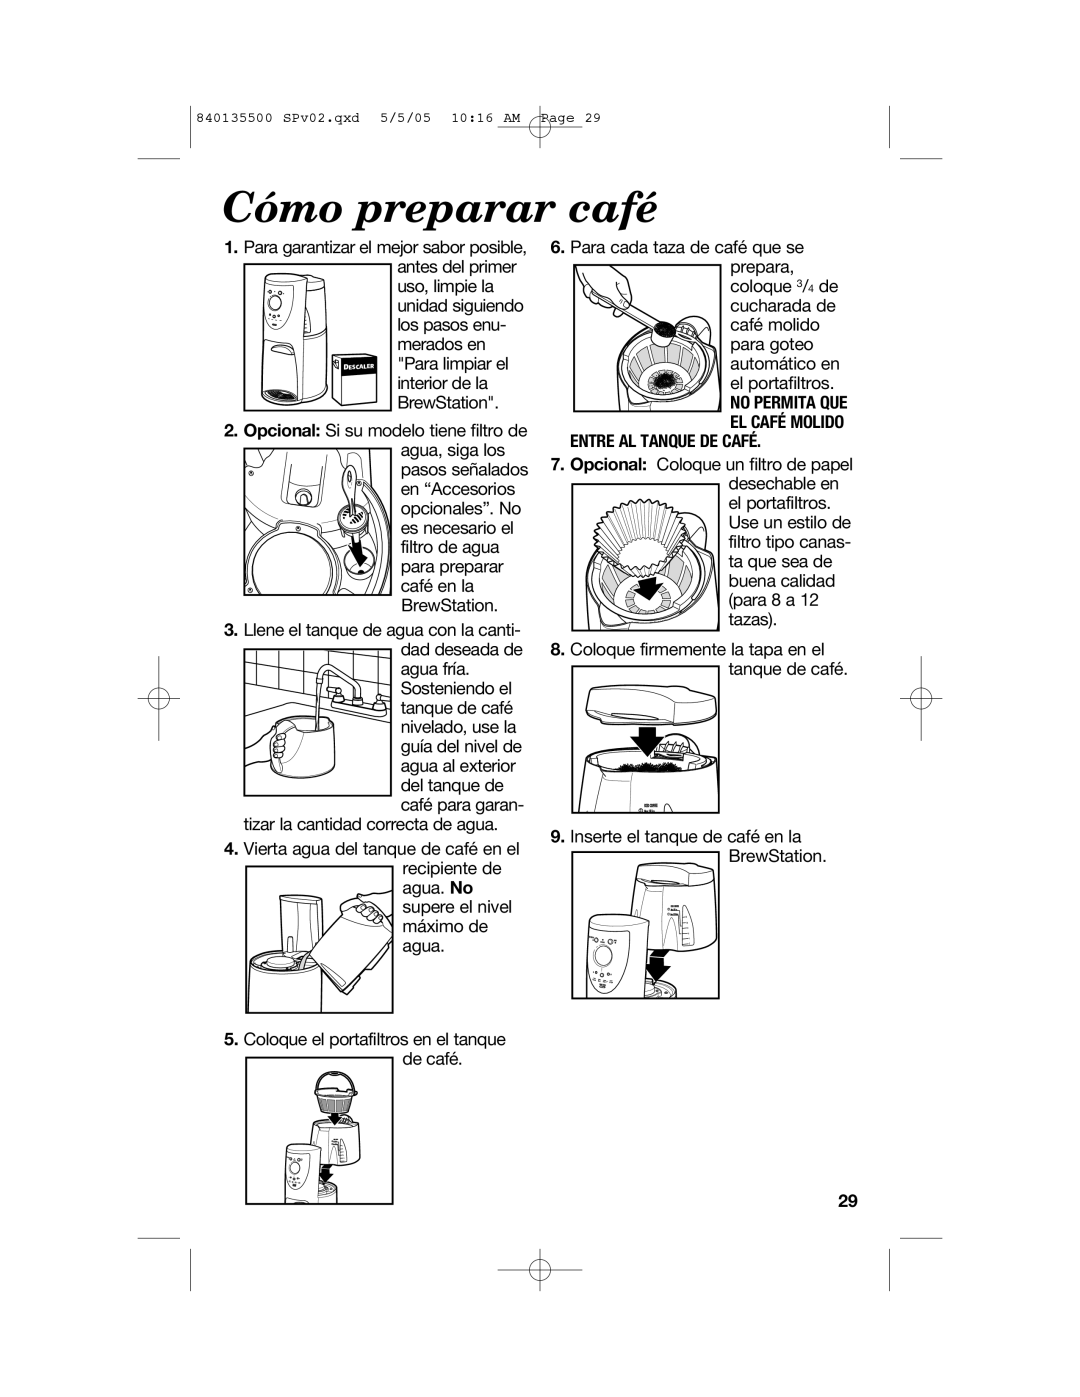 Hamilton Beach 47451 manual Cómo preparar café, No Permita Que El Café Molido, Entre Al Tanque De Café 